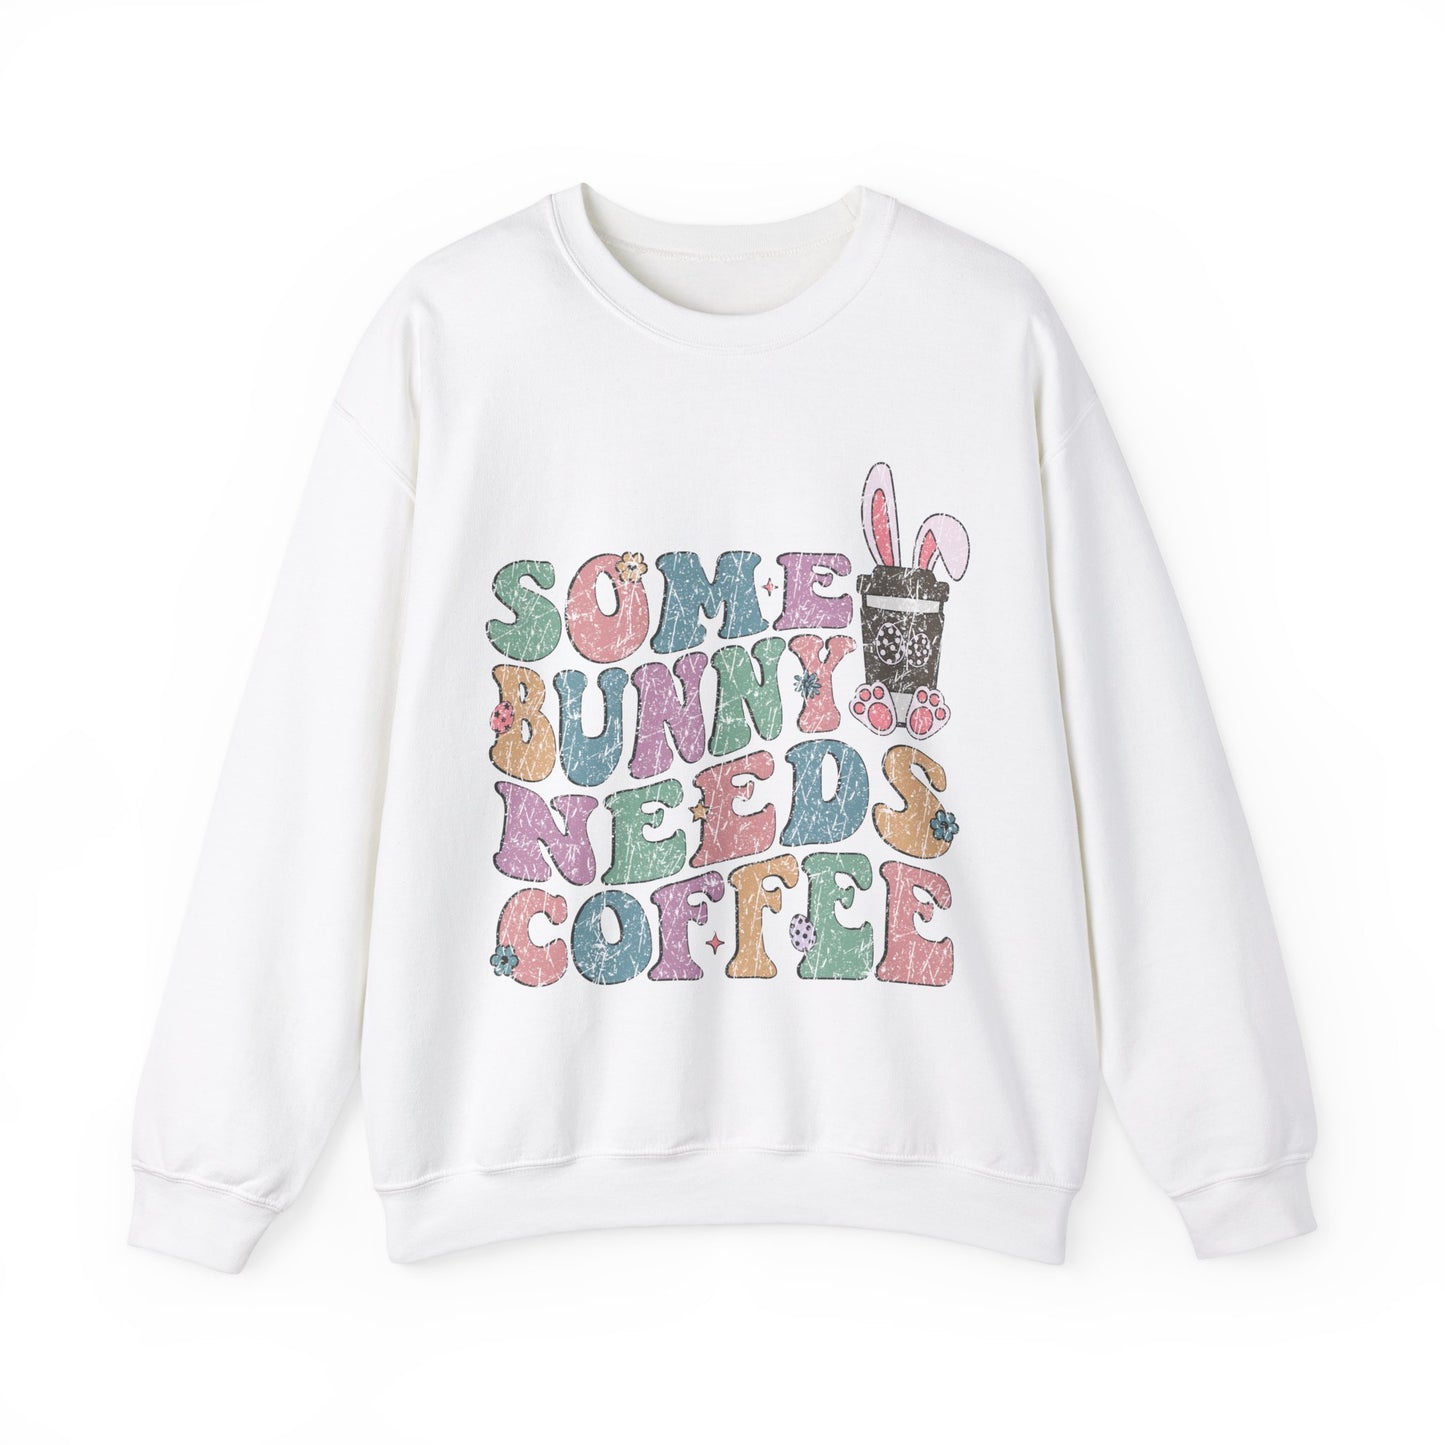 Some Bunny Needs Coffee Women's Easter Sweatshirt